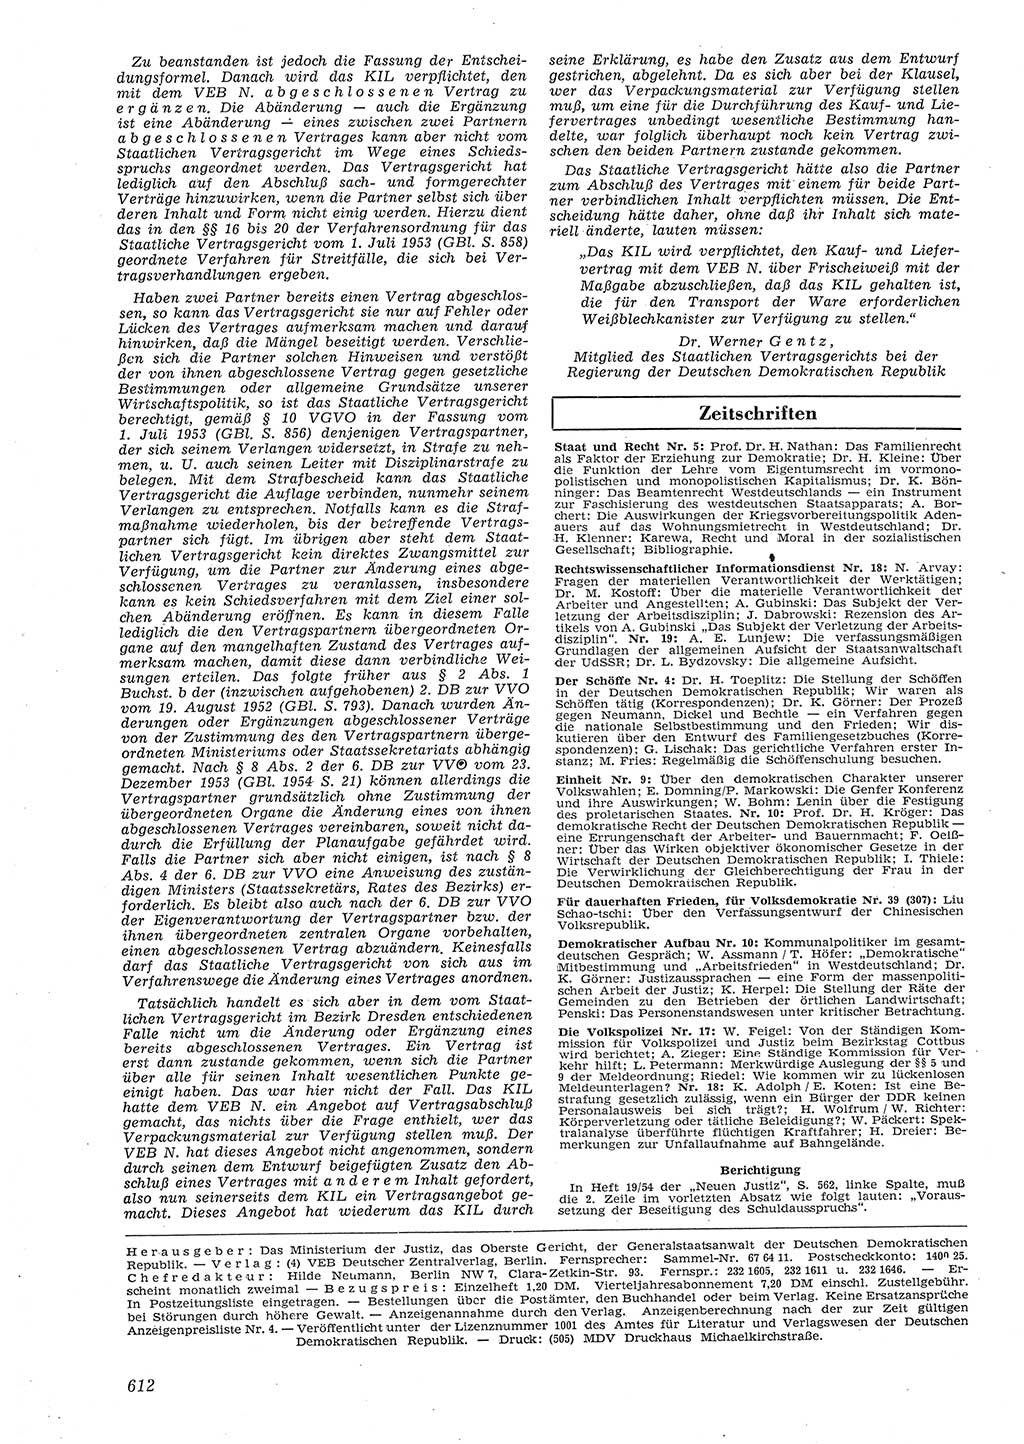 Neue Justiz (NJ), Zeitschrift für Recht und Rechtswissenschaft [Deutsche Demokratische Republik (DDR)], 8. Jahrgang 1954, Seite 612 (NJ DDR 1954, S. 612)